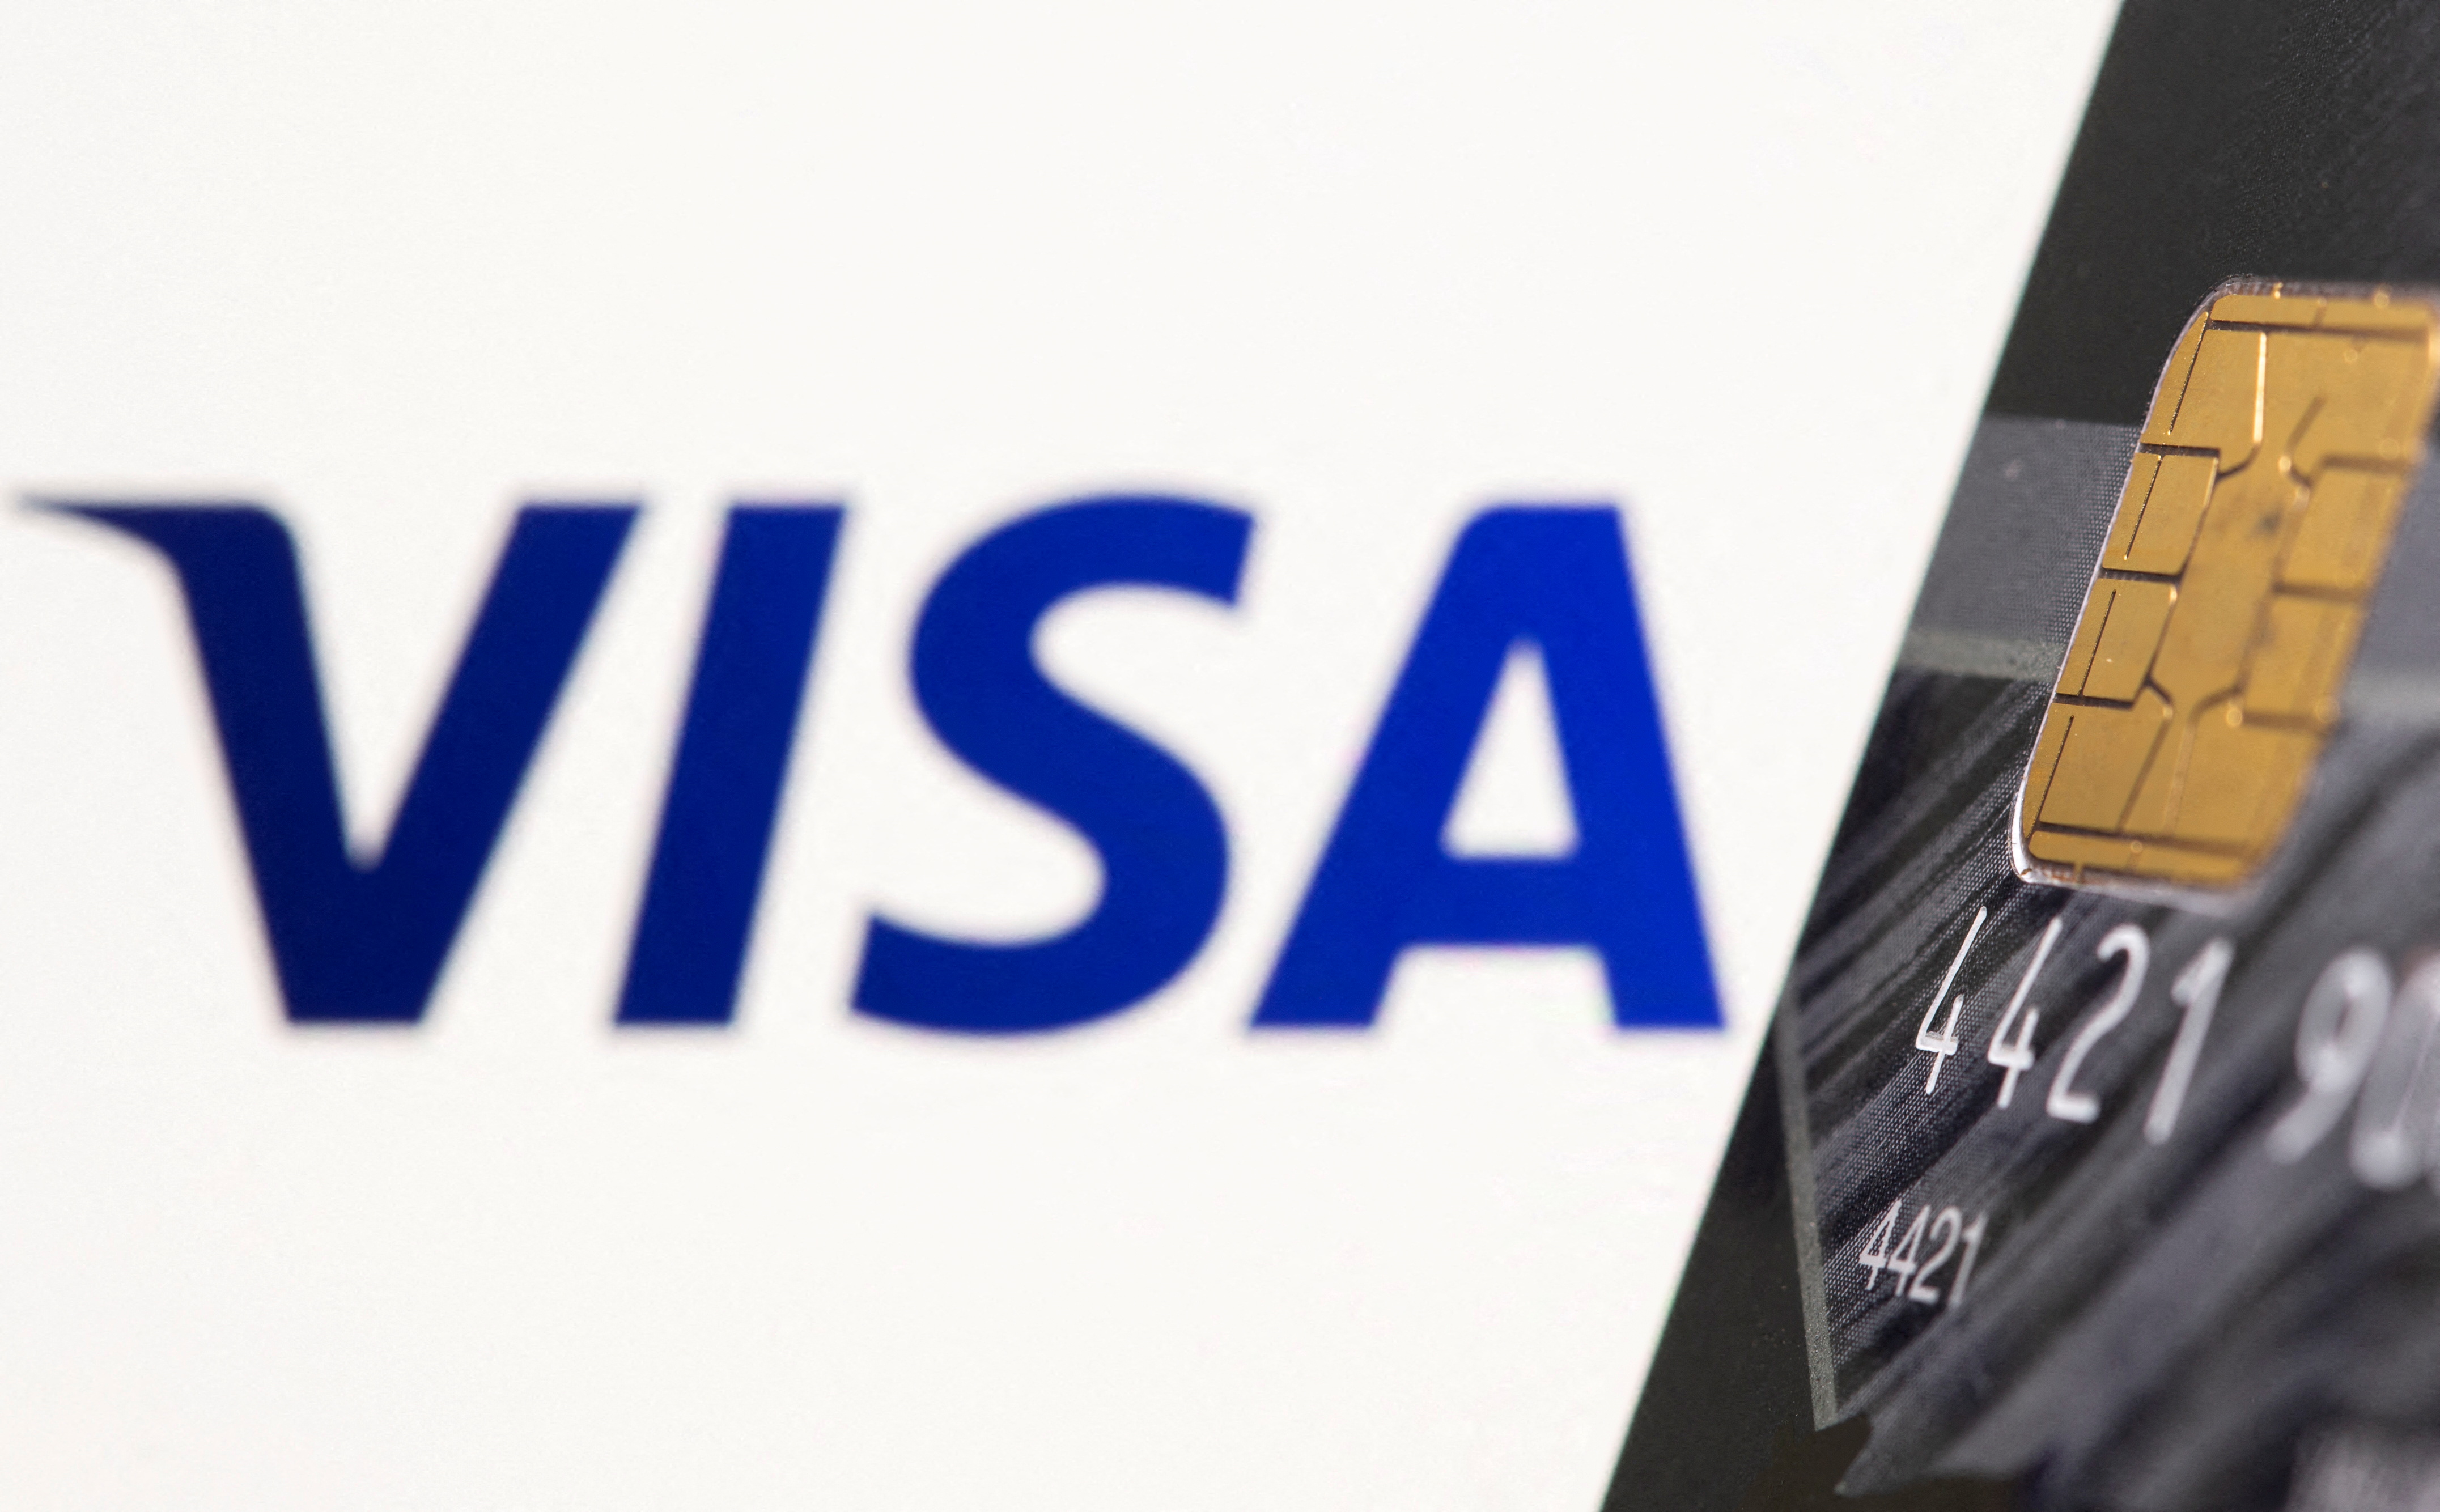 La tarjeta de crédito aparece en el frente del logotipo de Visa que se muestra en este gráfico